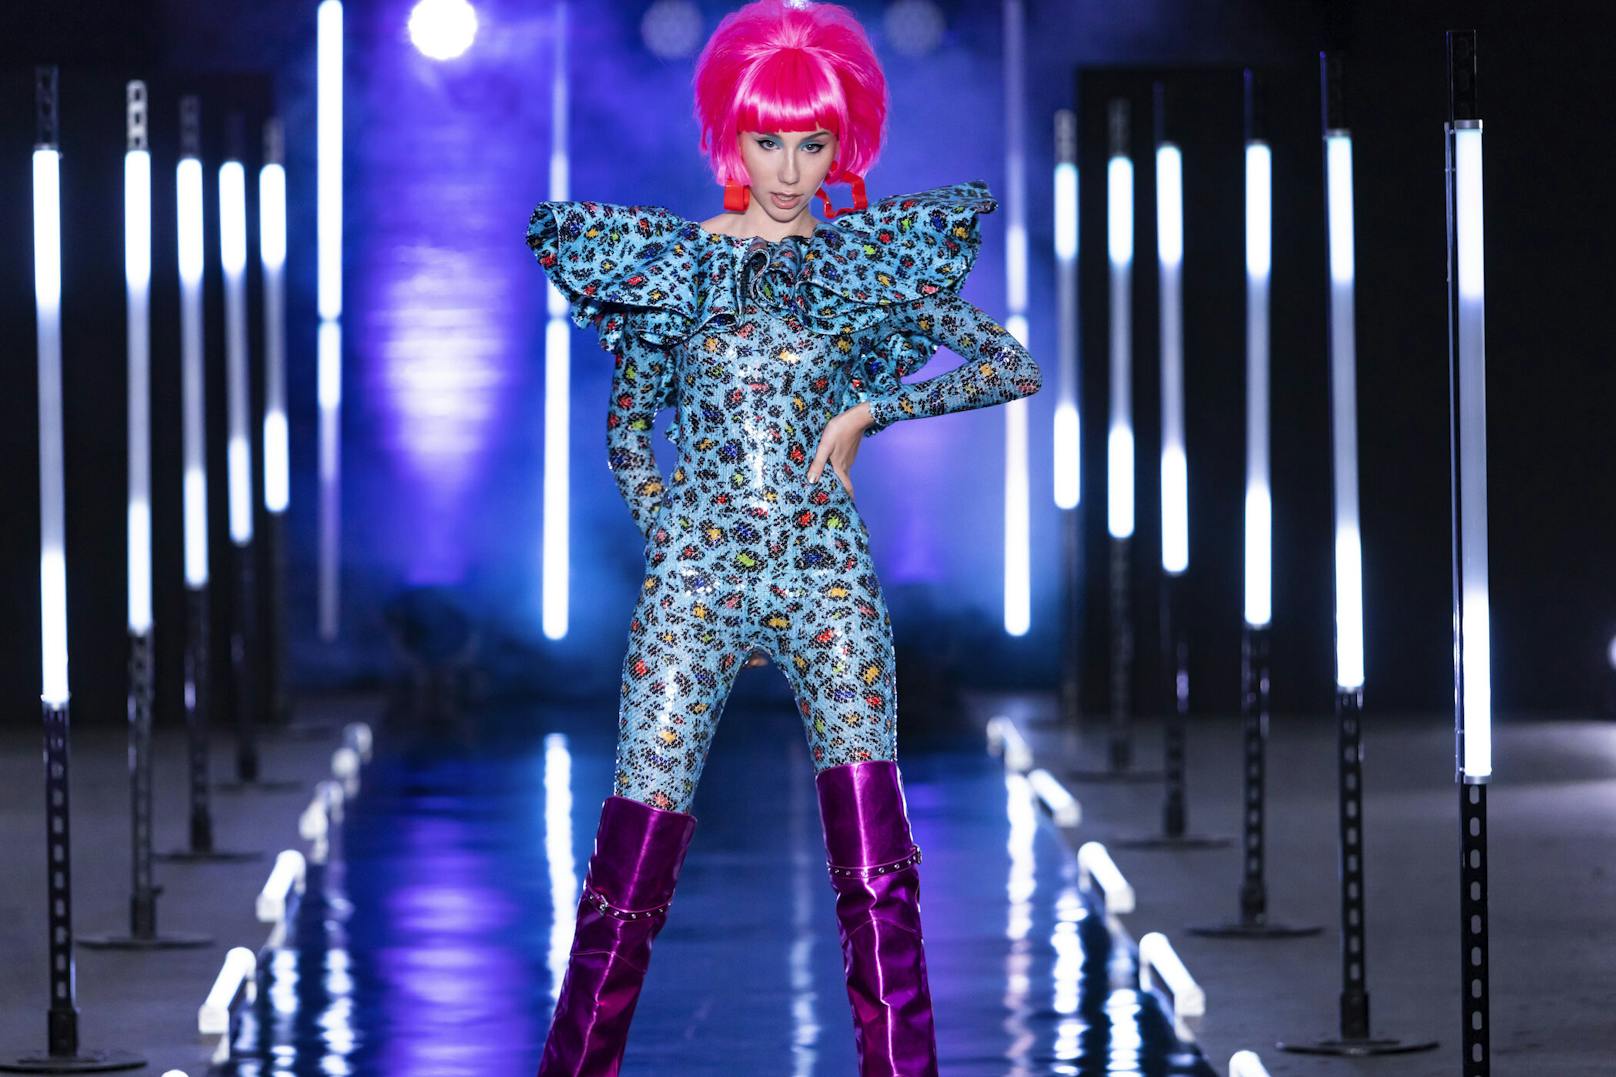 Nein – das ist nicht Lady Gaga in ihrem neuesten Musikvideo, sondern <strong>Tamara</strong>, die auch im schrillen Neon-Outfit gekonnt den Laufsteg rockt.